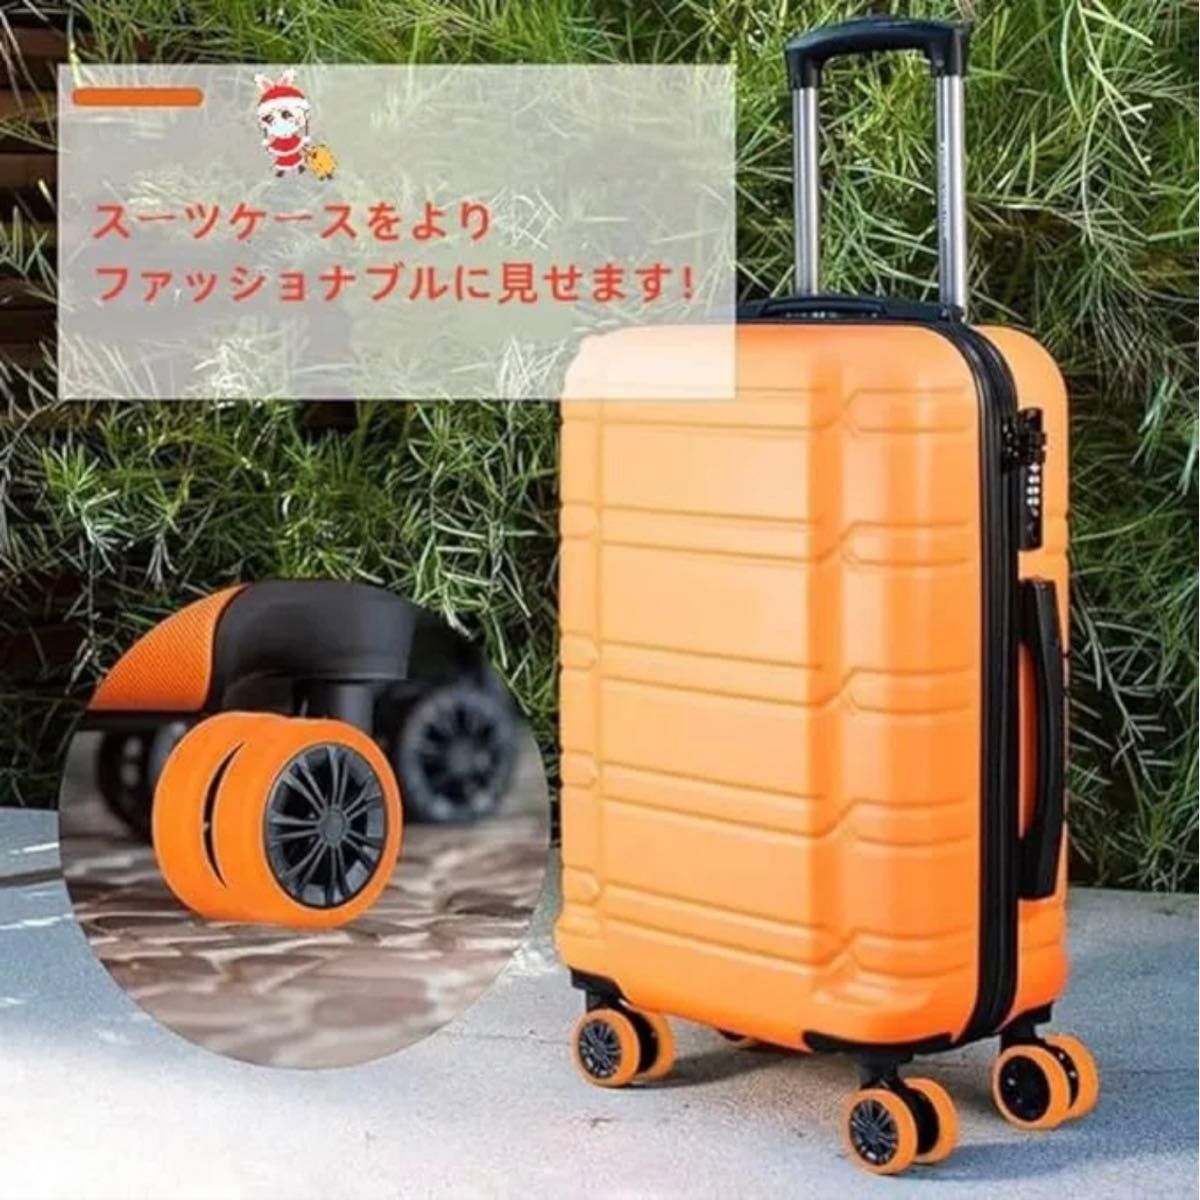 スーツケース用 キャスターカバー シリコン製 静音ホイールカバー 8点セット 